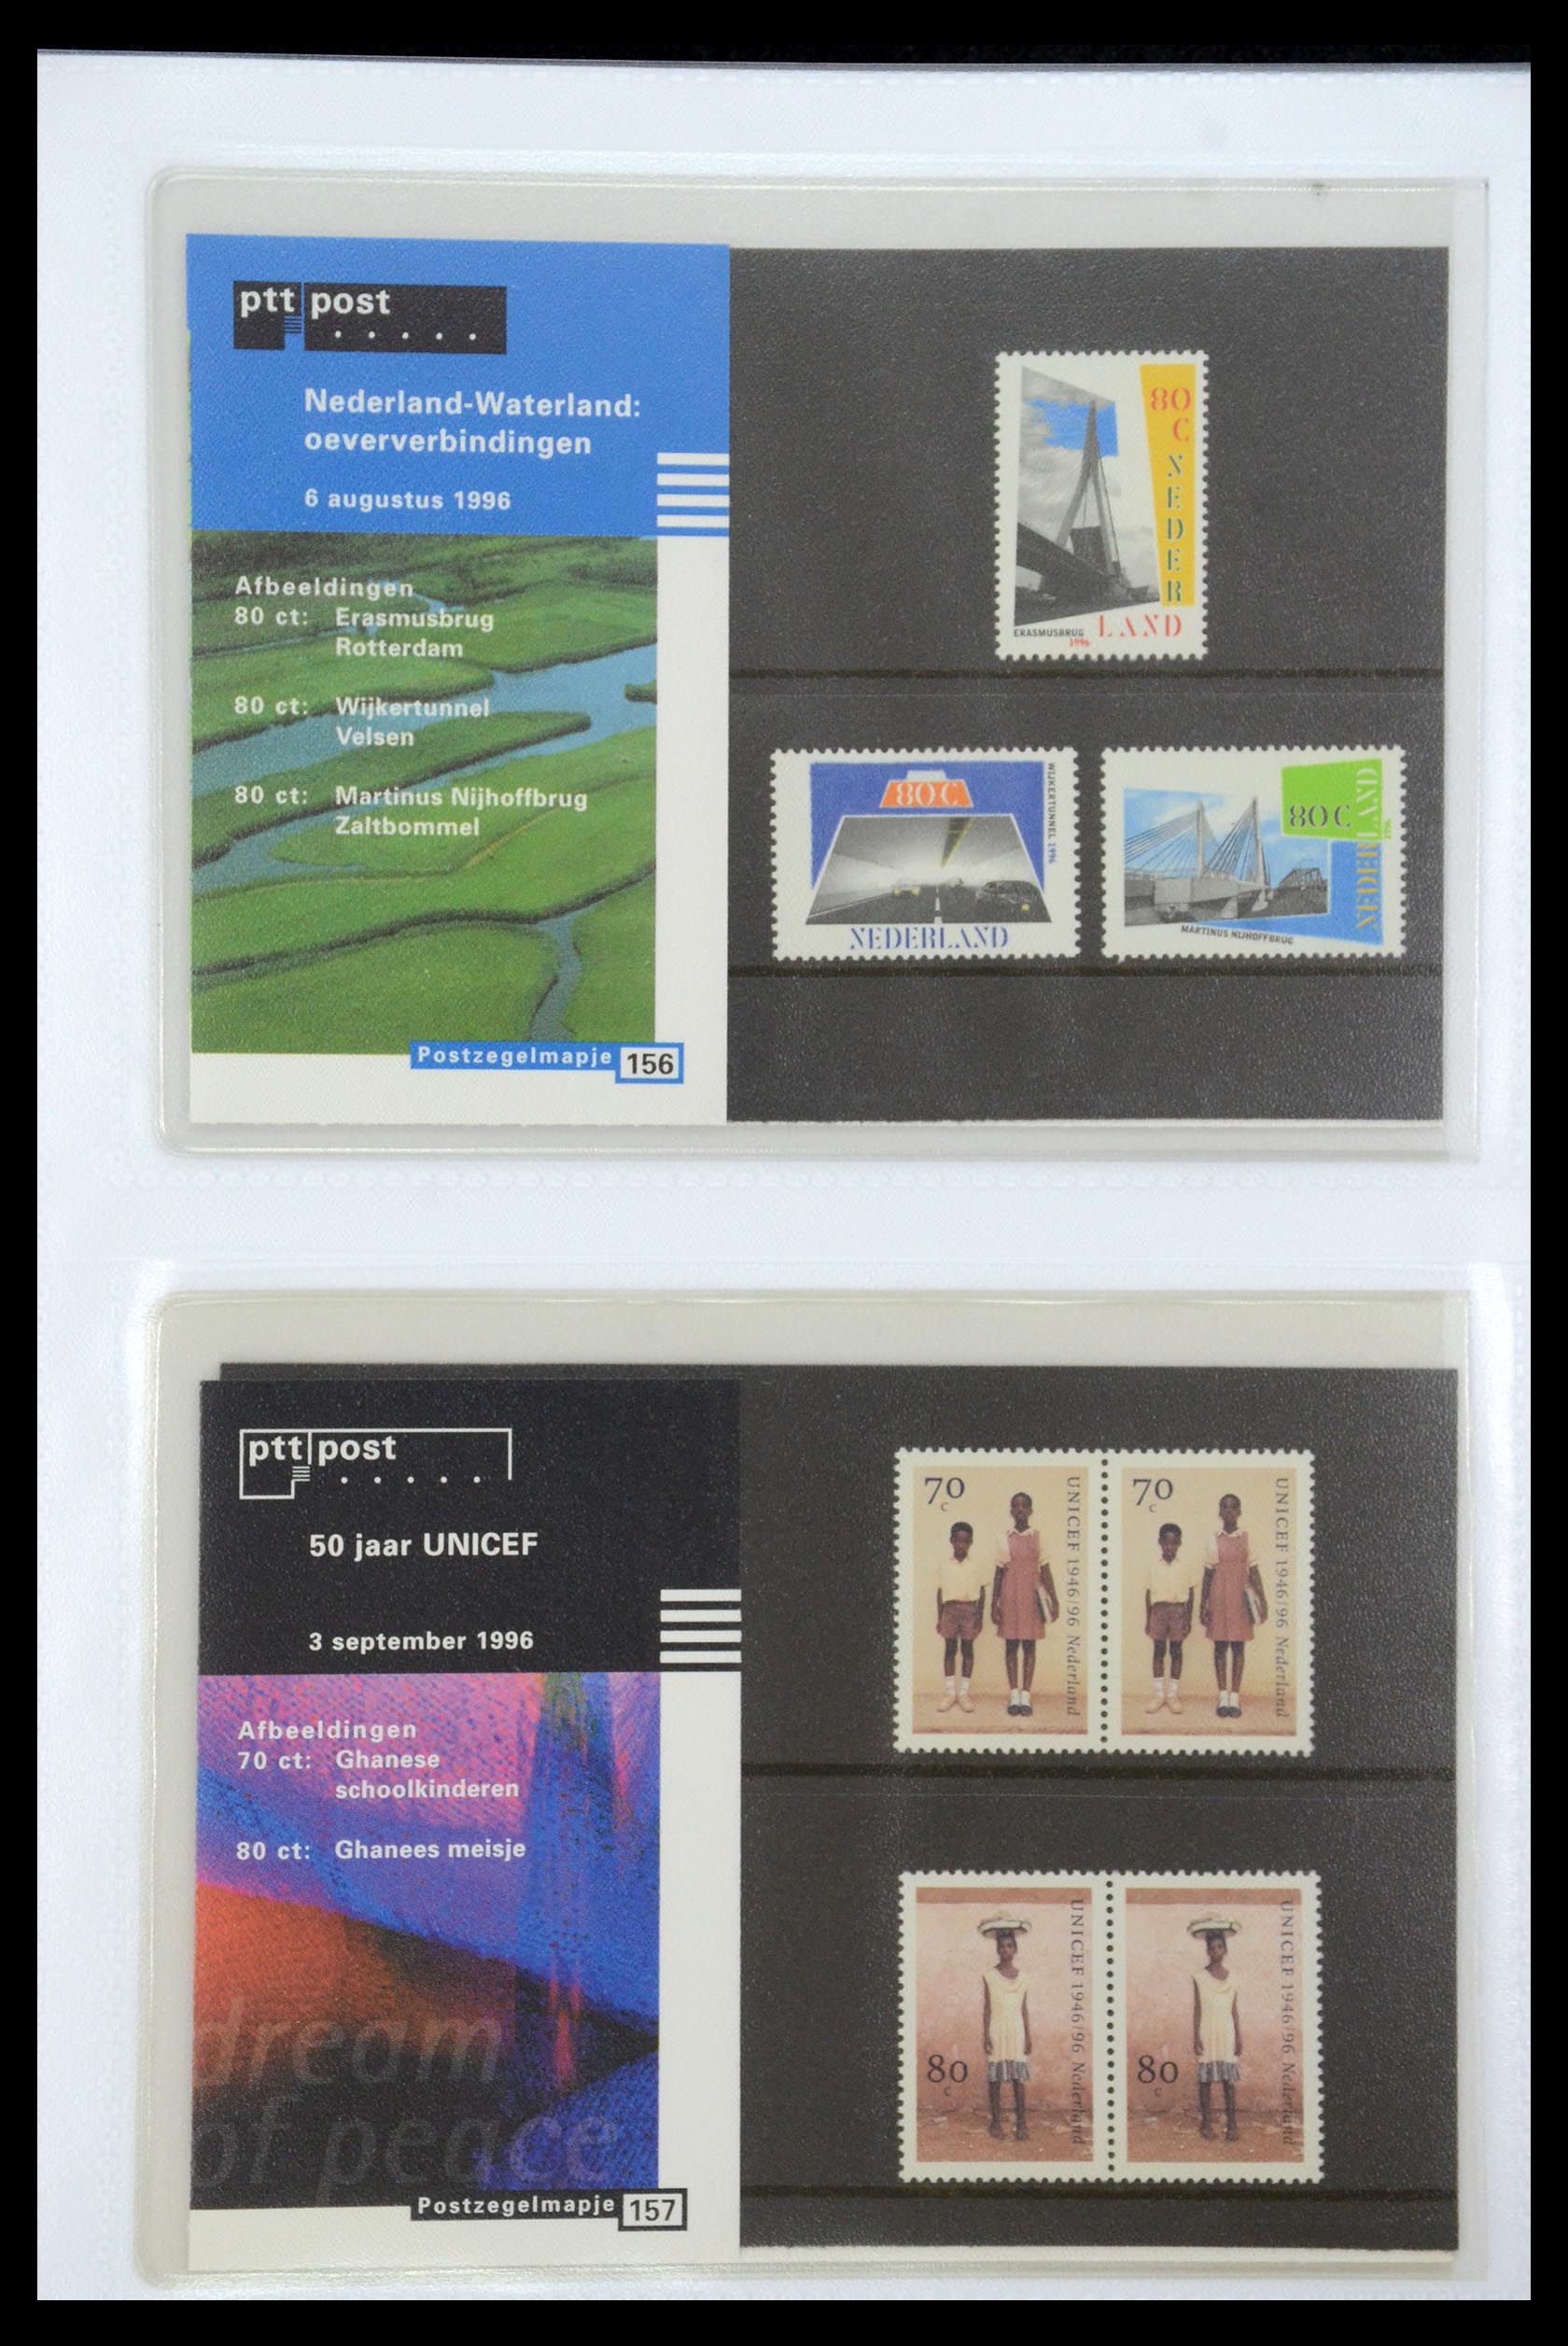 35947 081 - Stamp Collection 35947 Netherlands PTT presentation packs 1982-2019!